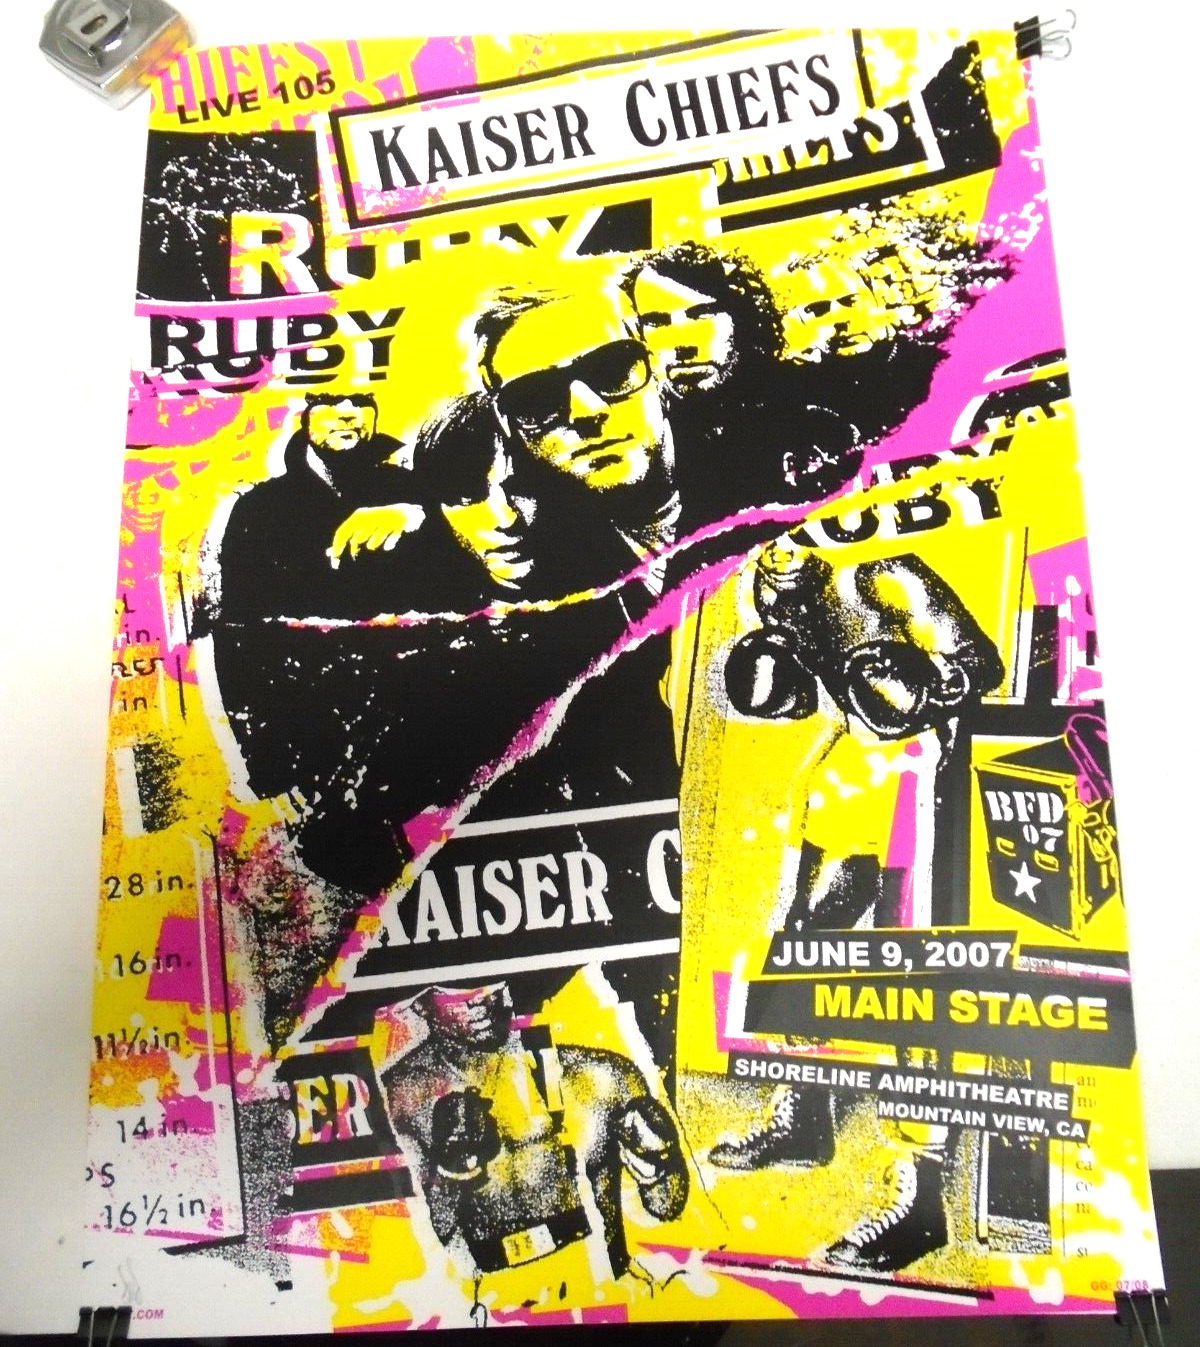 Rolled 2007 Kaiser Chiefs Bfd Summer Concert Flyer Poster Silk Screen Print